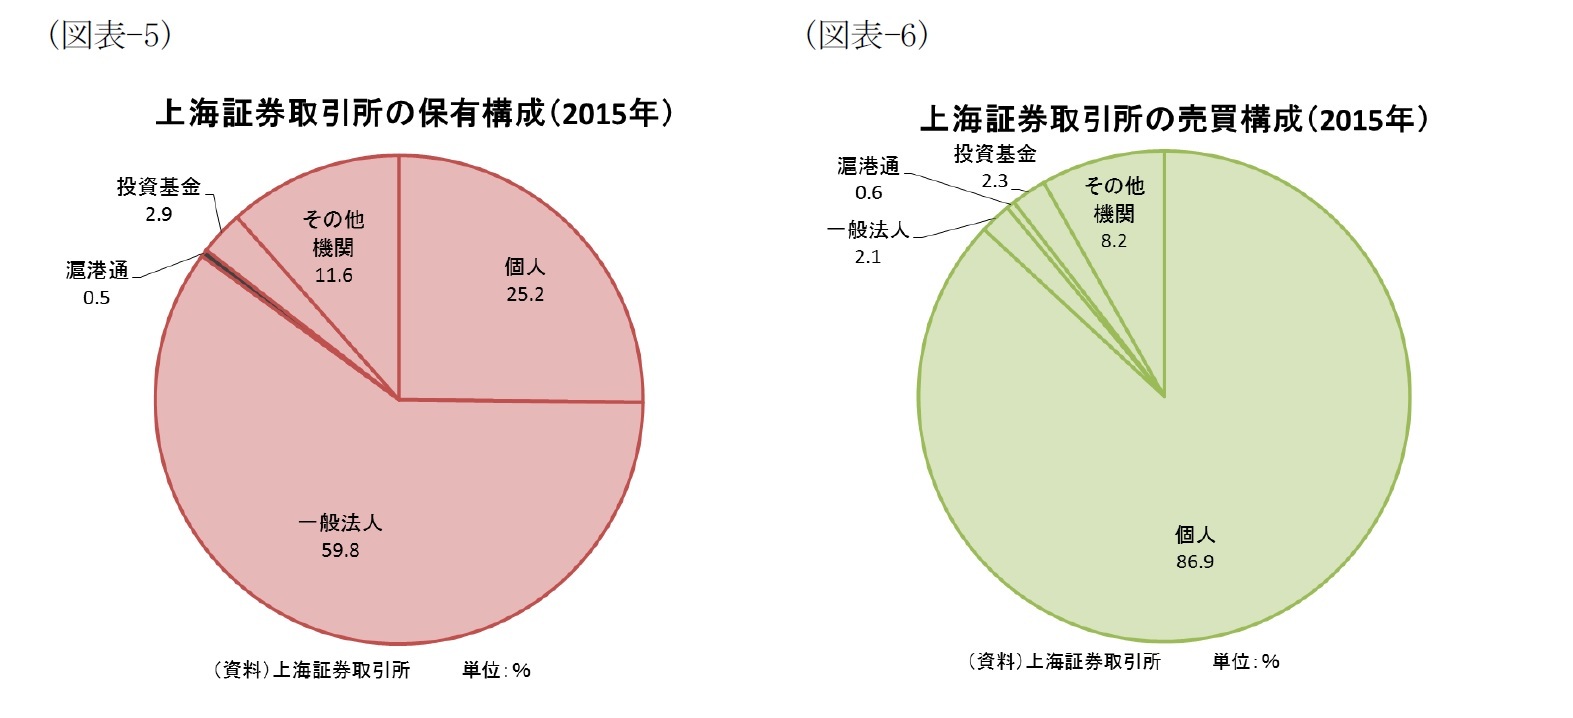 図表でみる中国経済 株式市場編 日本との相違点及びｍｓｃｉ問題 ニッセイ基礎研究所